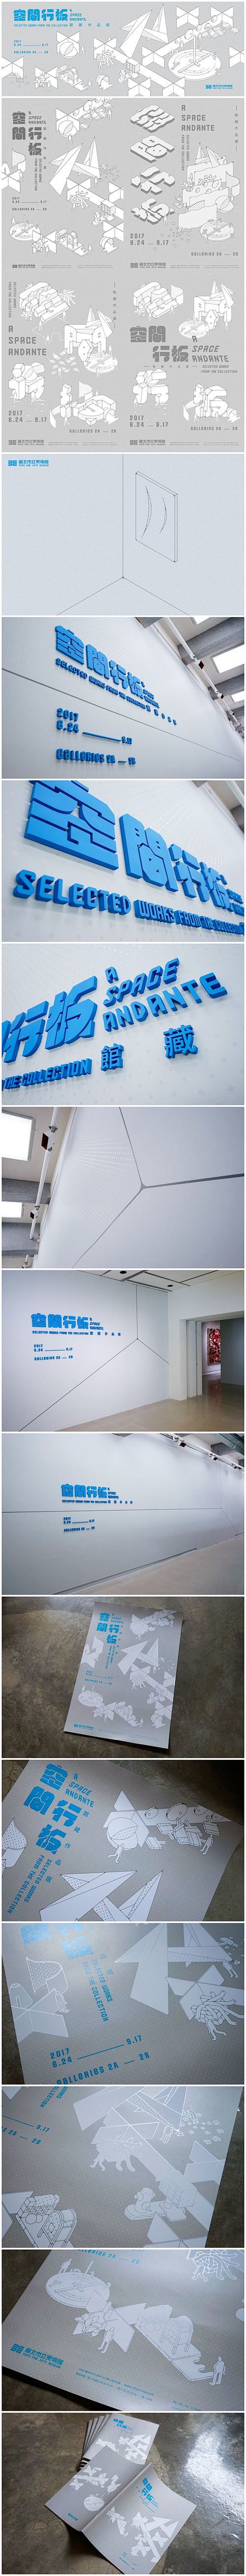 台北市立美术馆视觉设计A SPACE A...